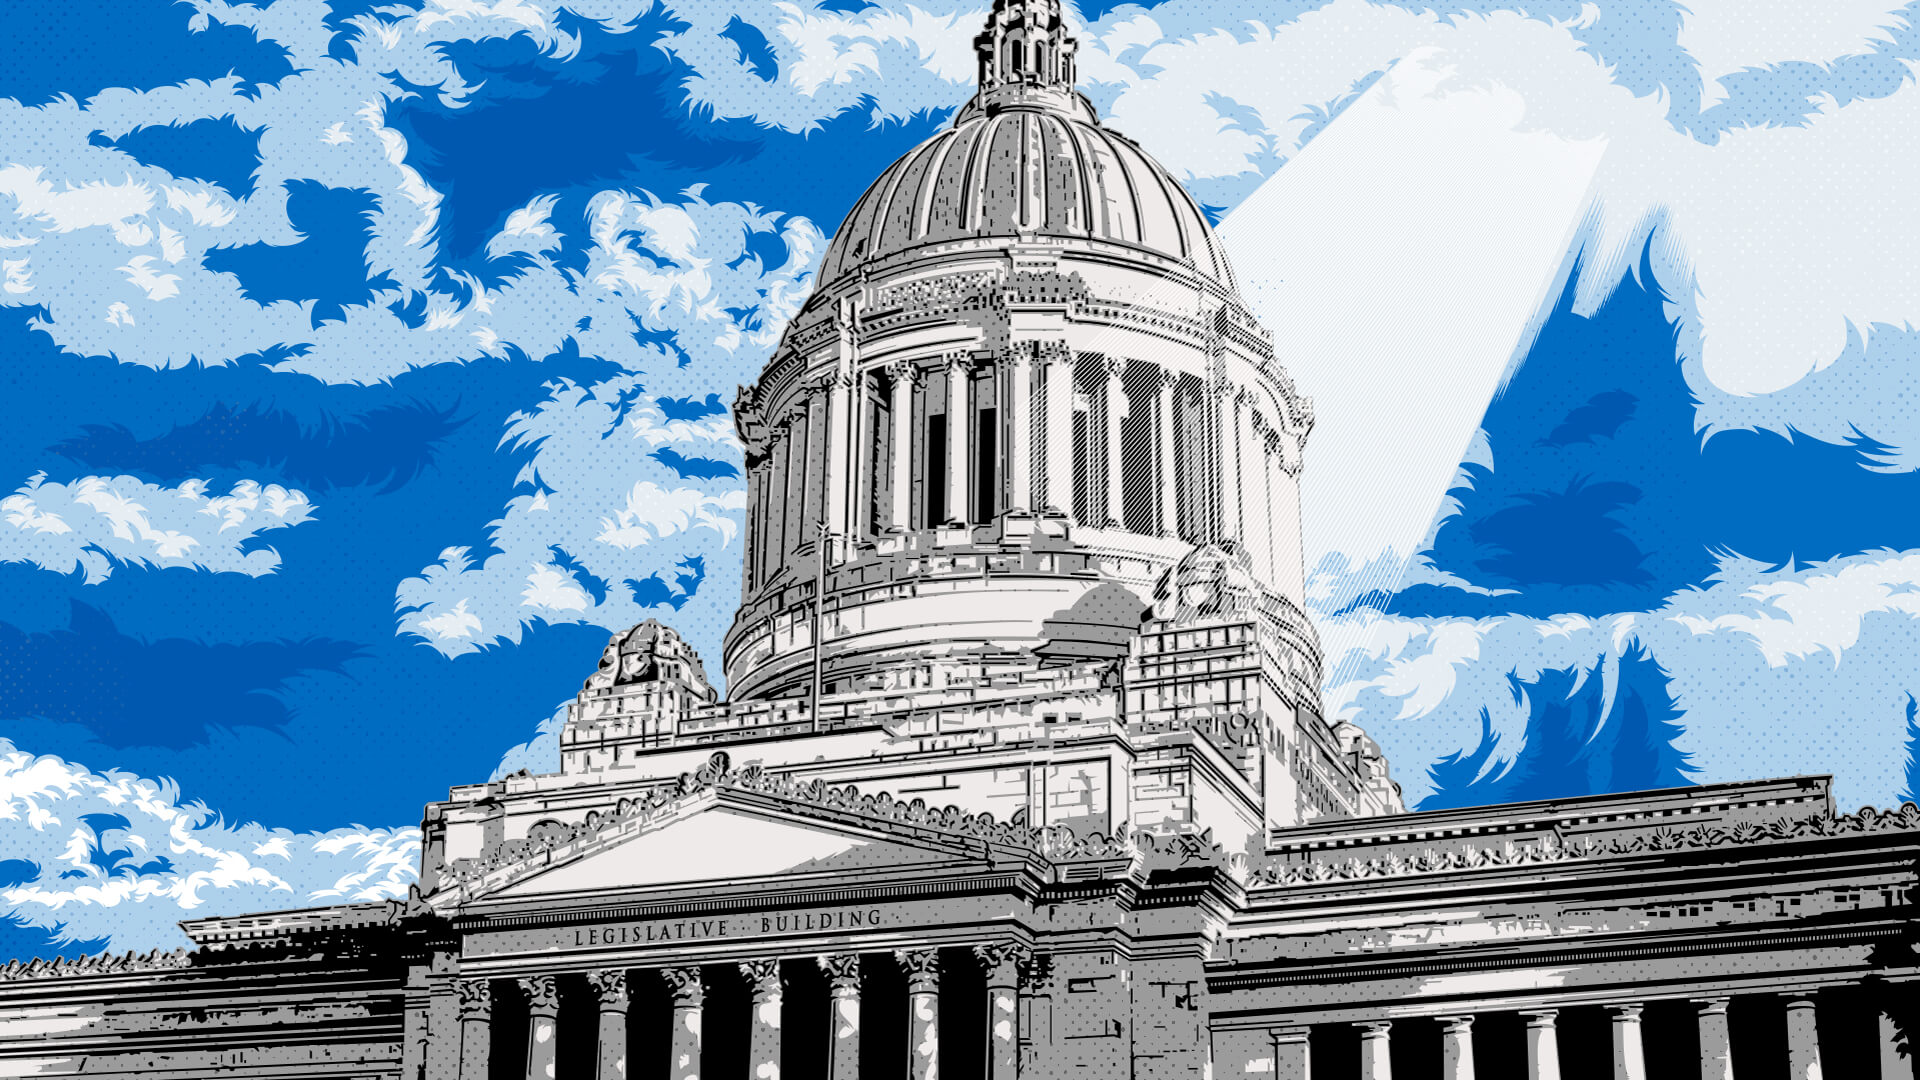 Illustration of Washington state capitol